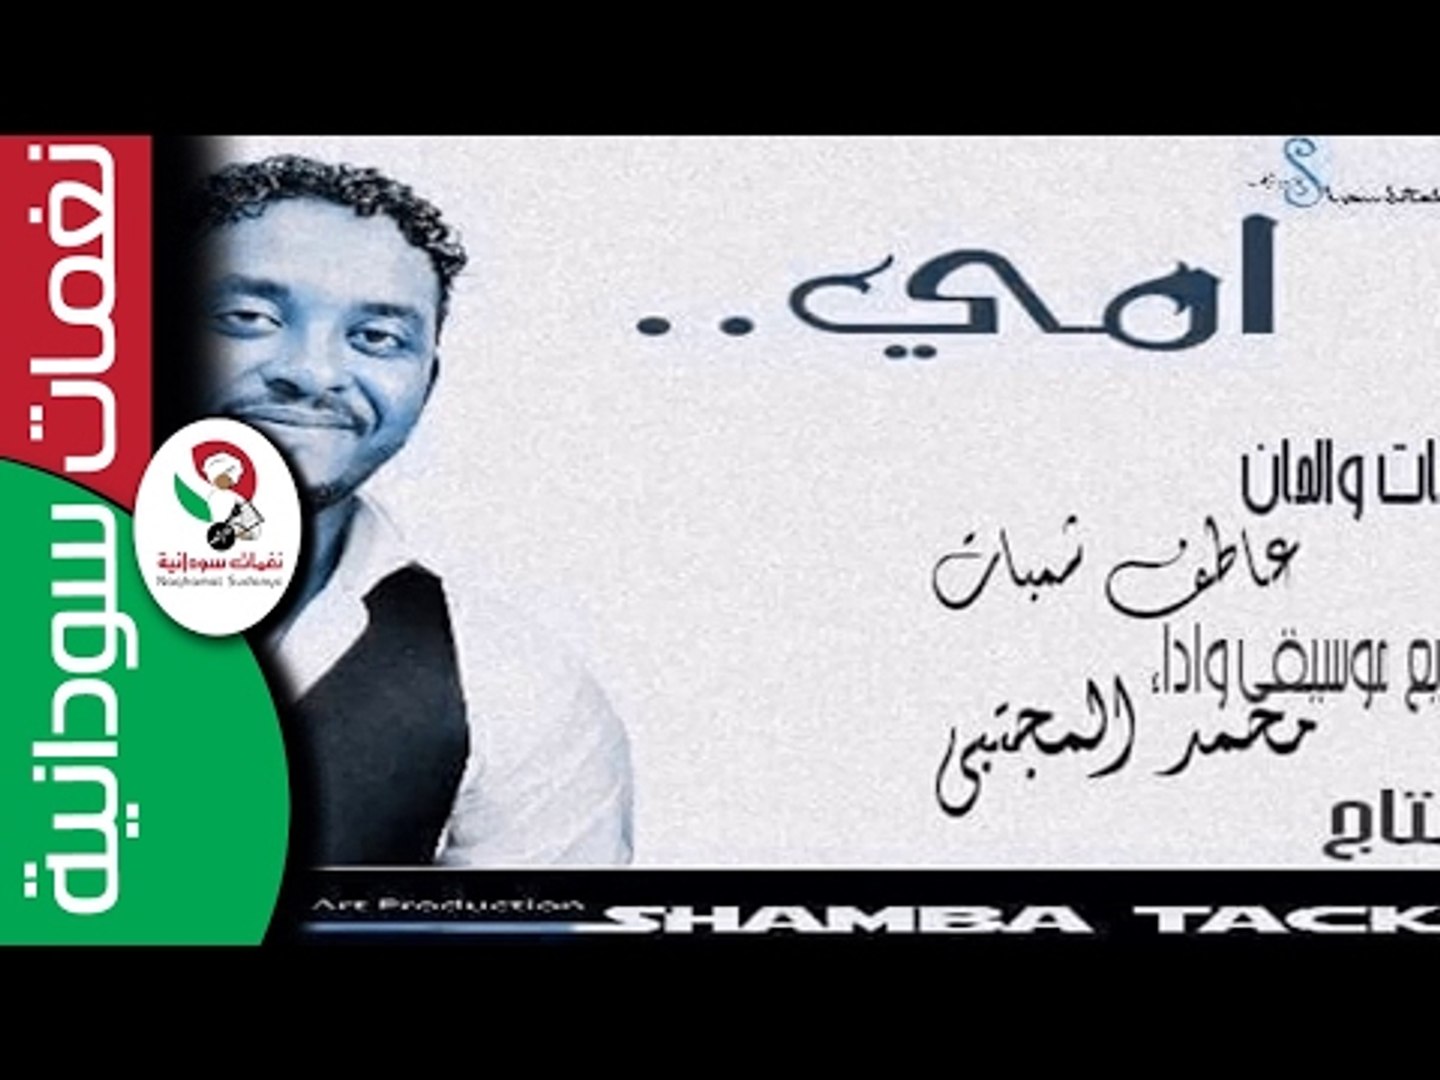 محمد المجتبي / امي || عيد الام || || أغنية سودانية جديدة NEW 2017 || -  video Dailymotion